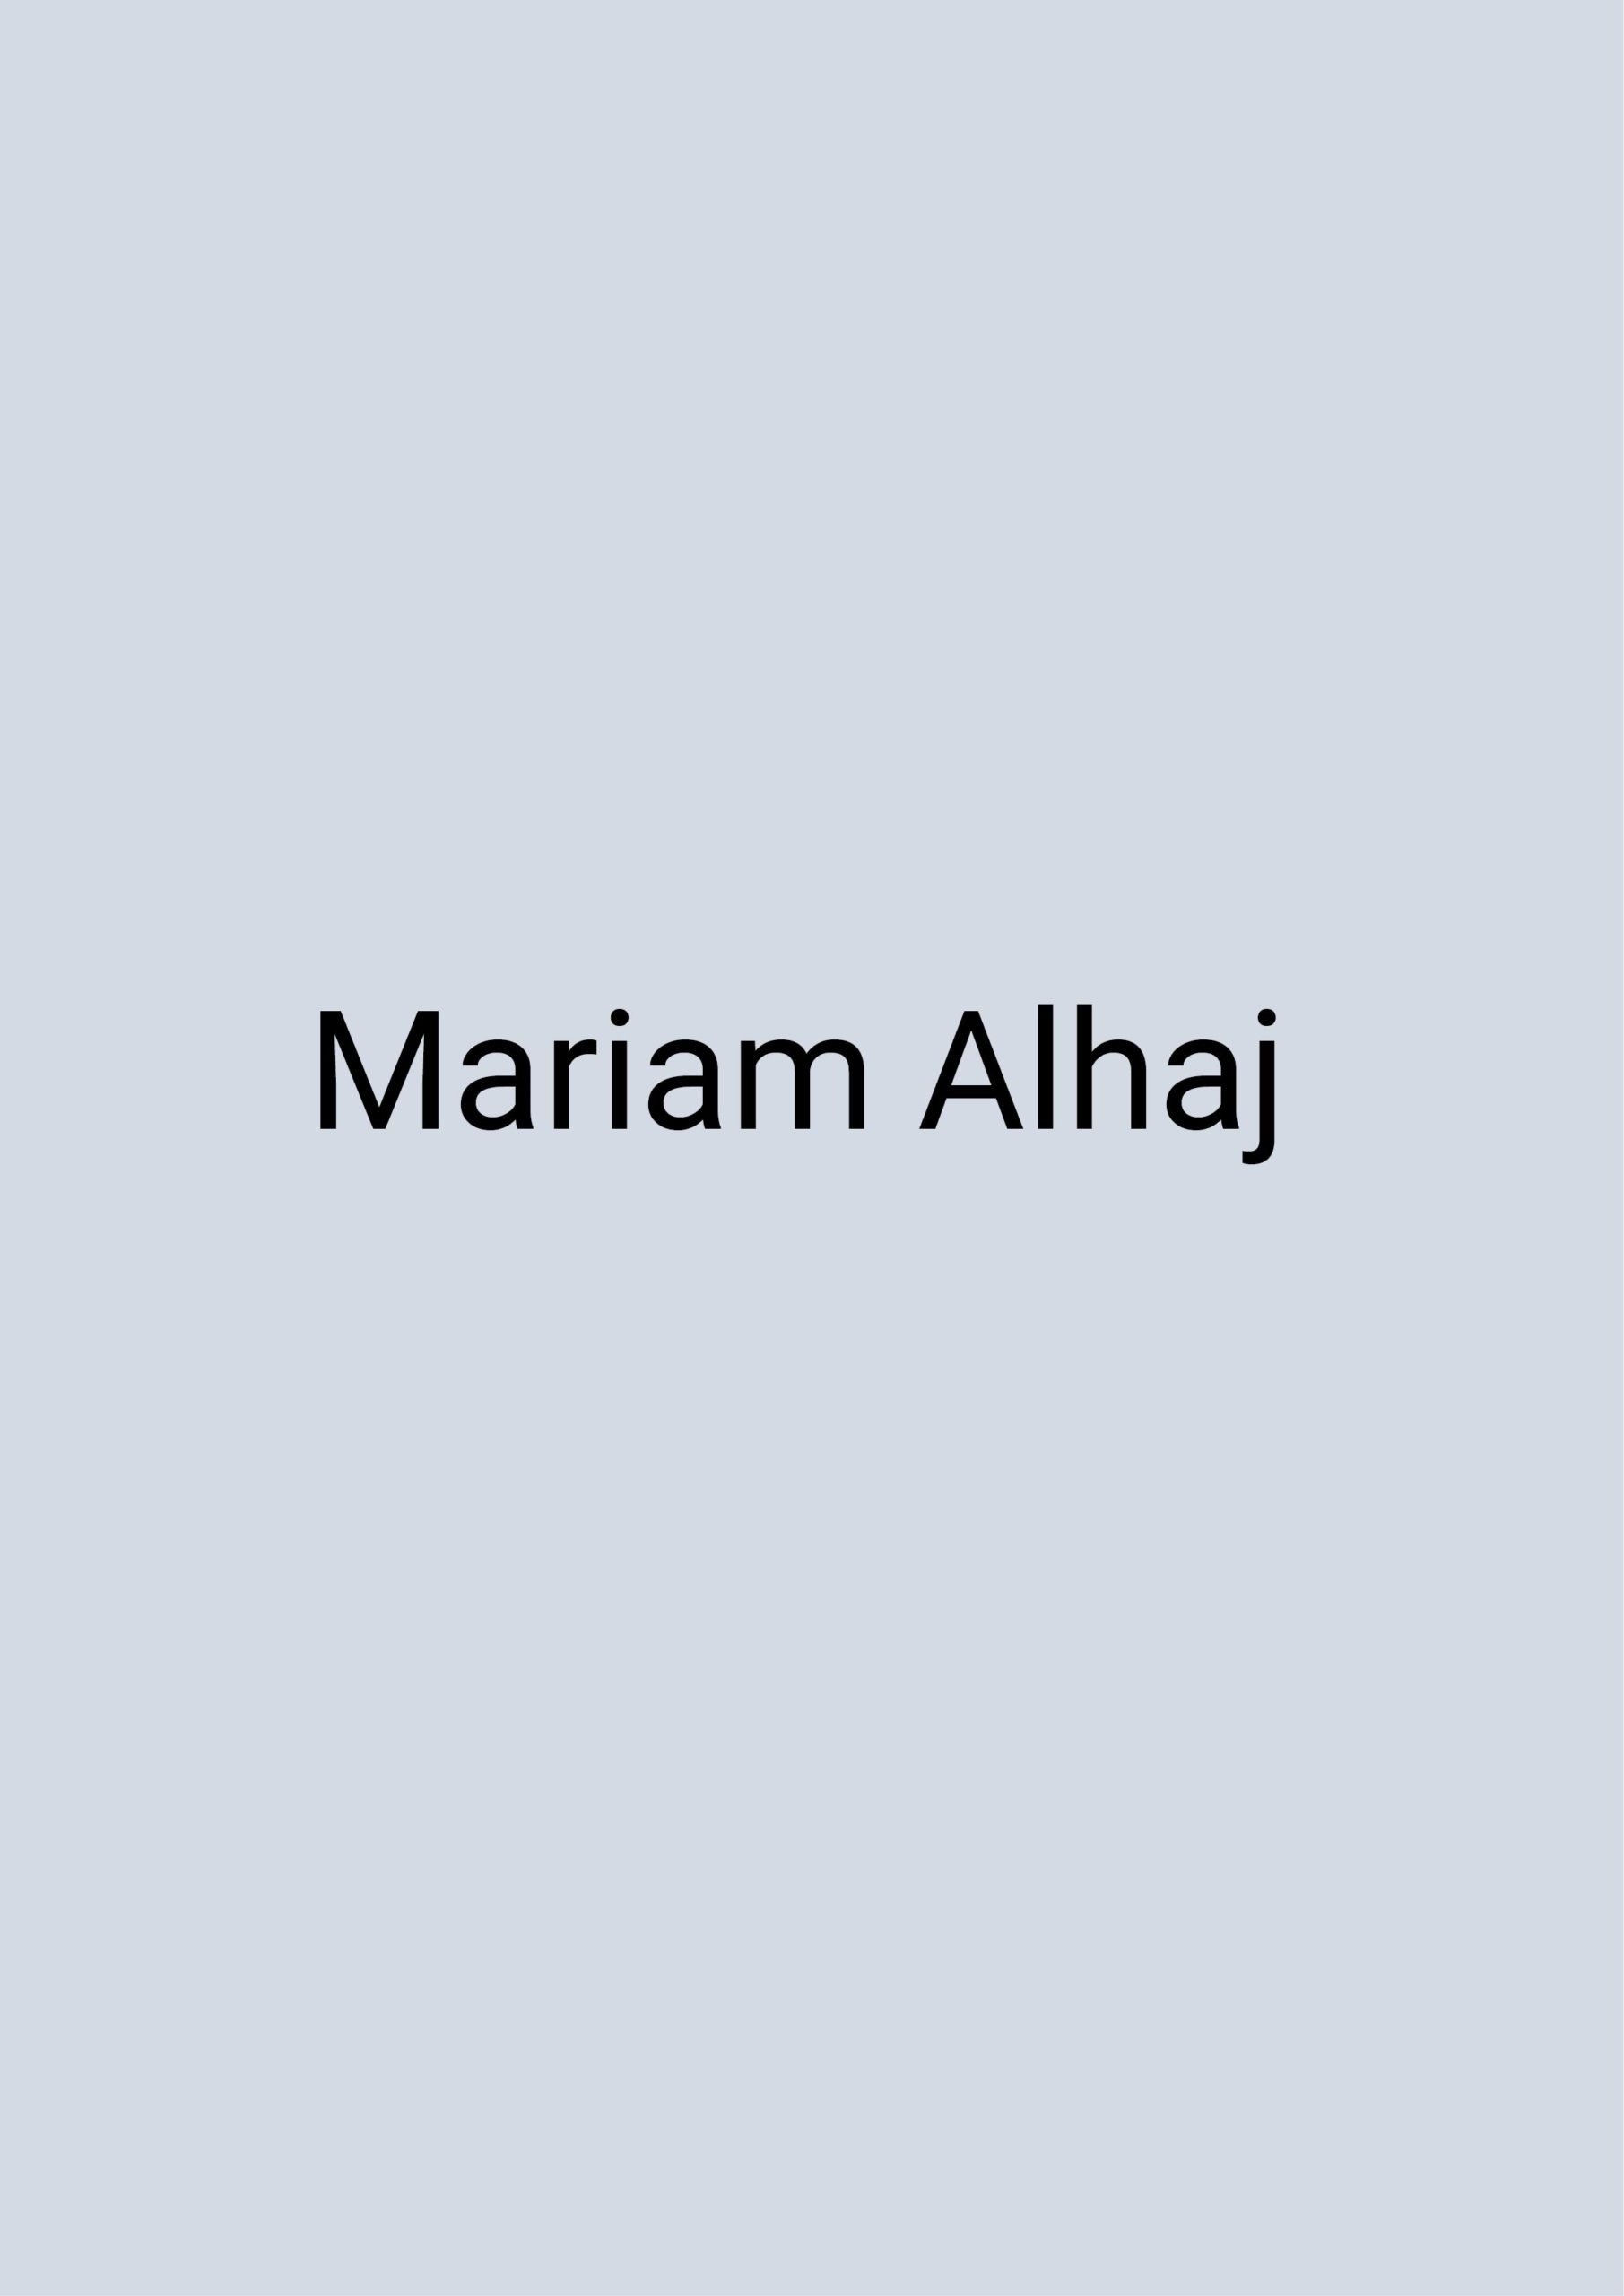 Grafik: blauer Hintergrund, auf dem in schwarzer Schrift "Mariam Alhaj" geschrieben steht.